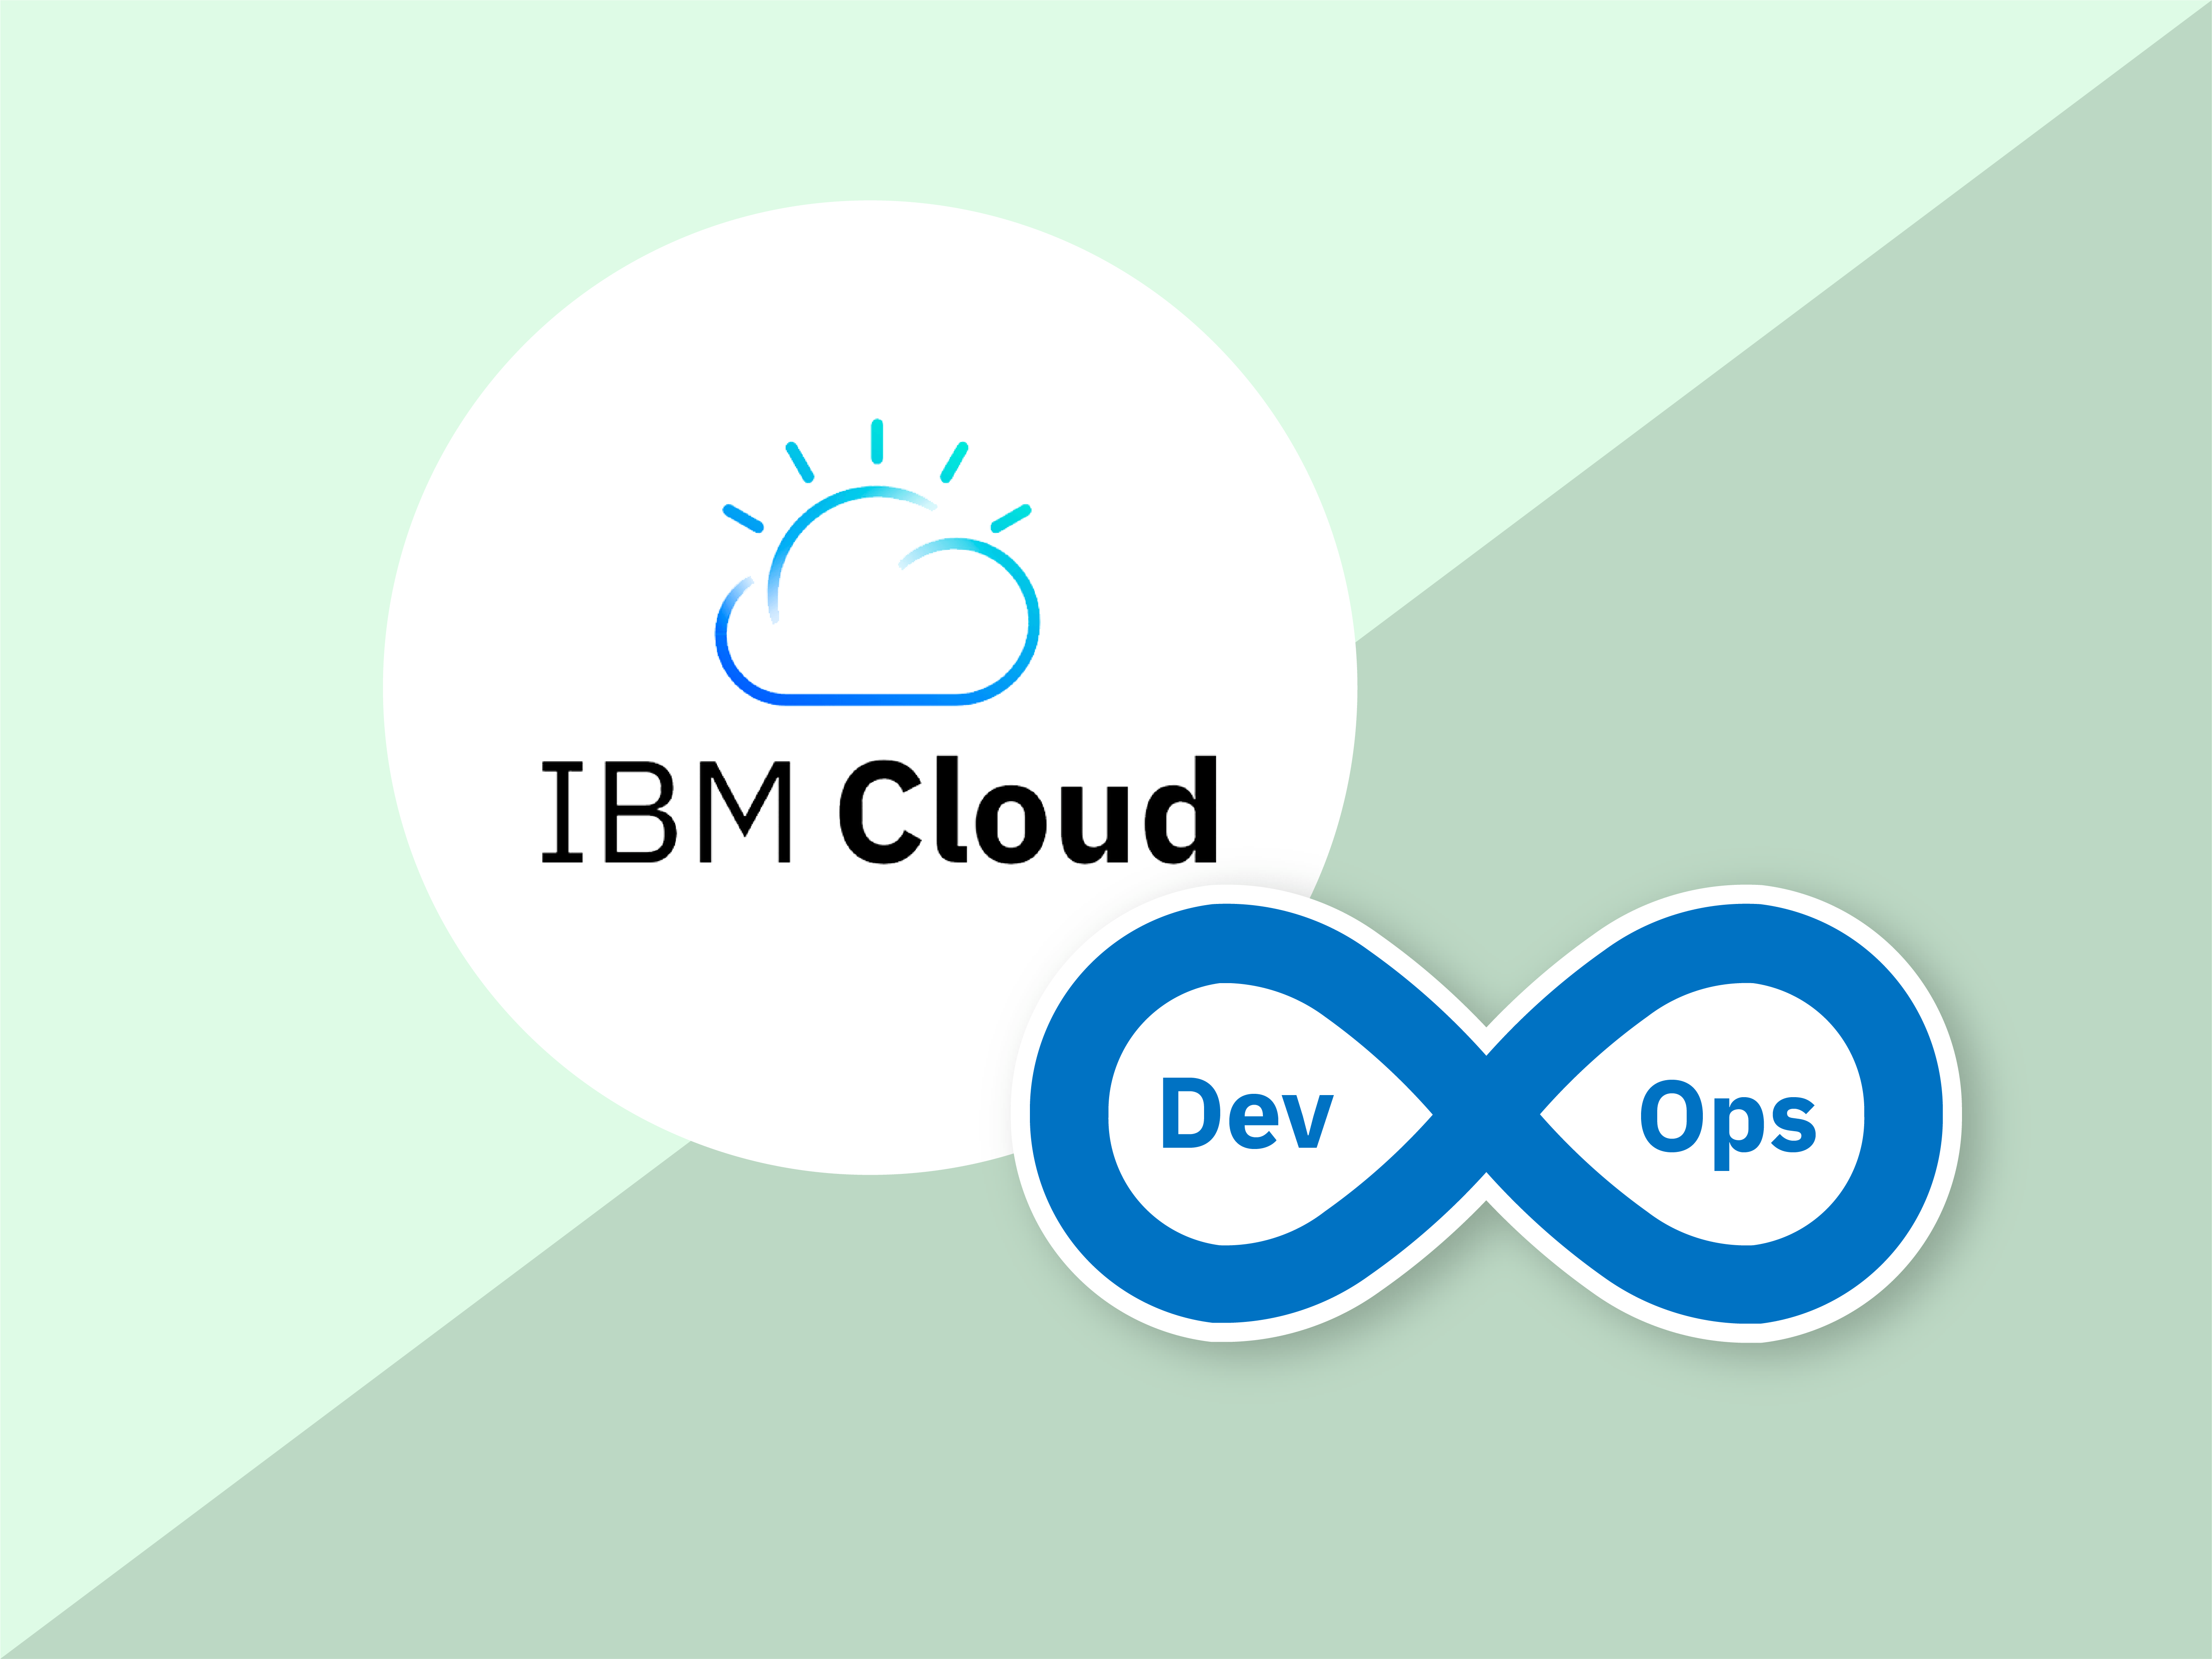 Perform DevOps on IBM Cloud Image